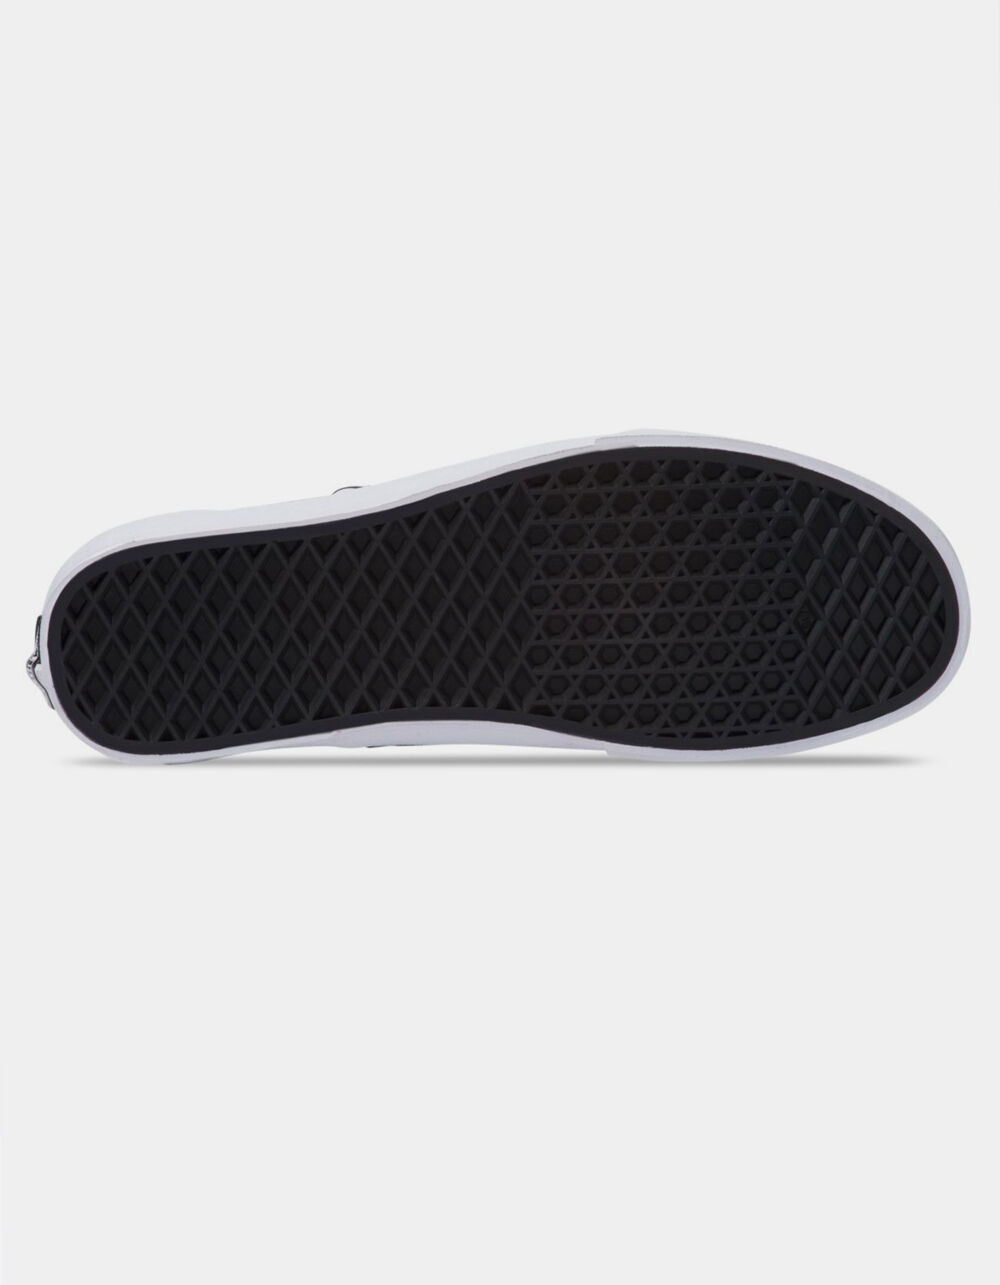 VANS Checkerboard Slip-On Black & Black Shoes image number 4